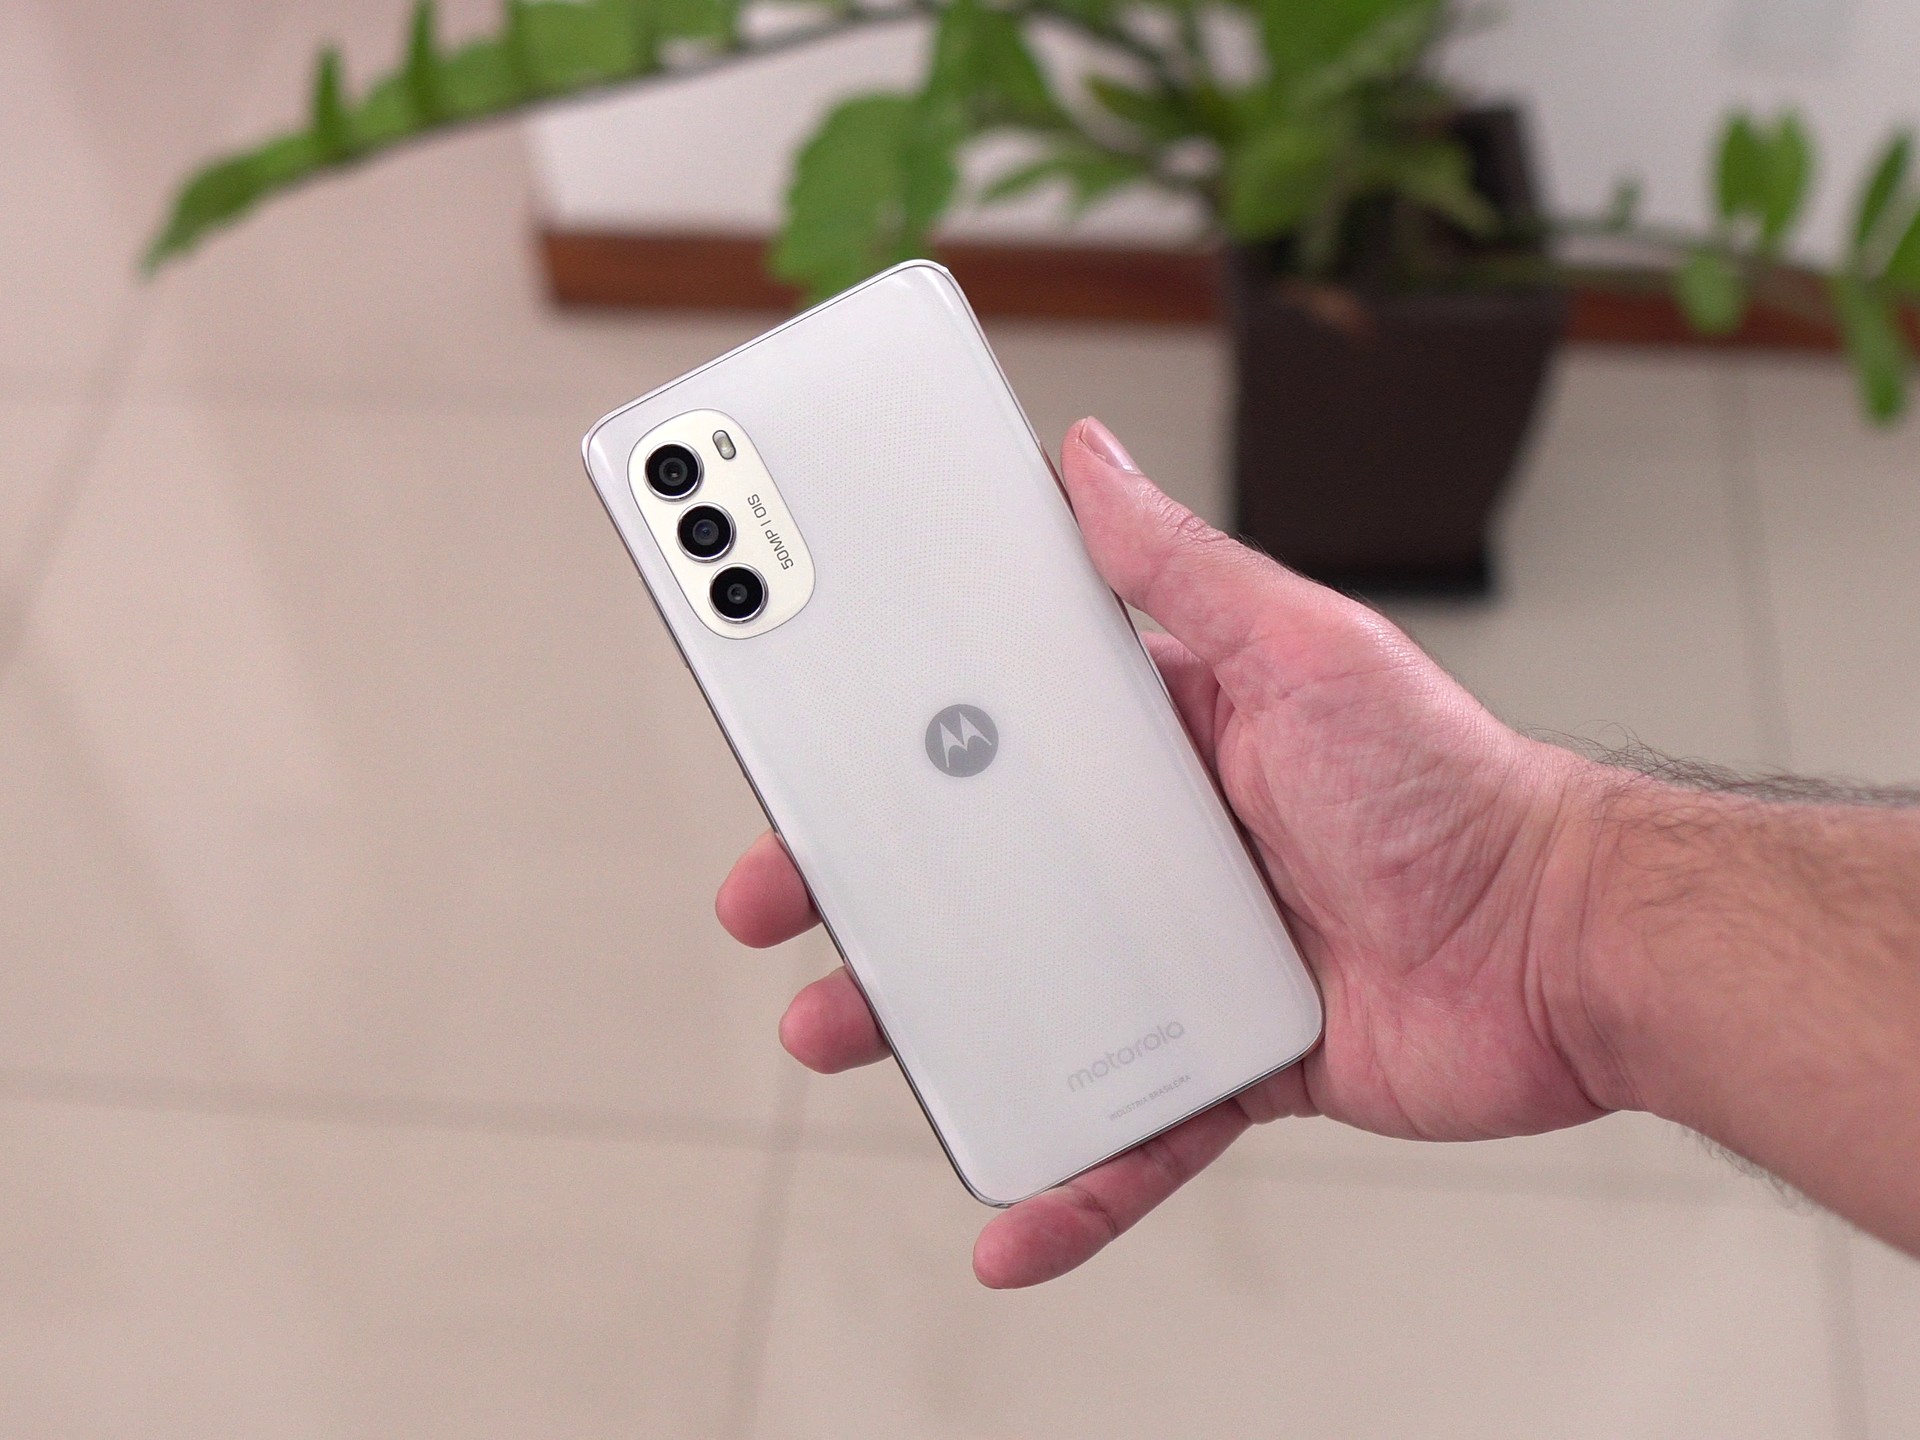 Motorola Moto G (2015) recebe o novo Android 8 Oreo extraoficialmente 